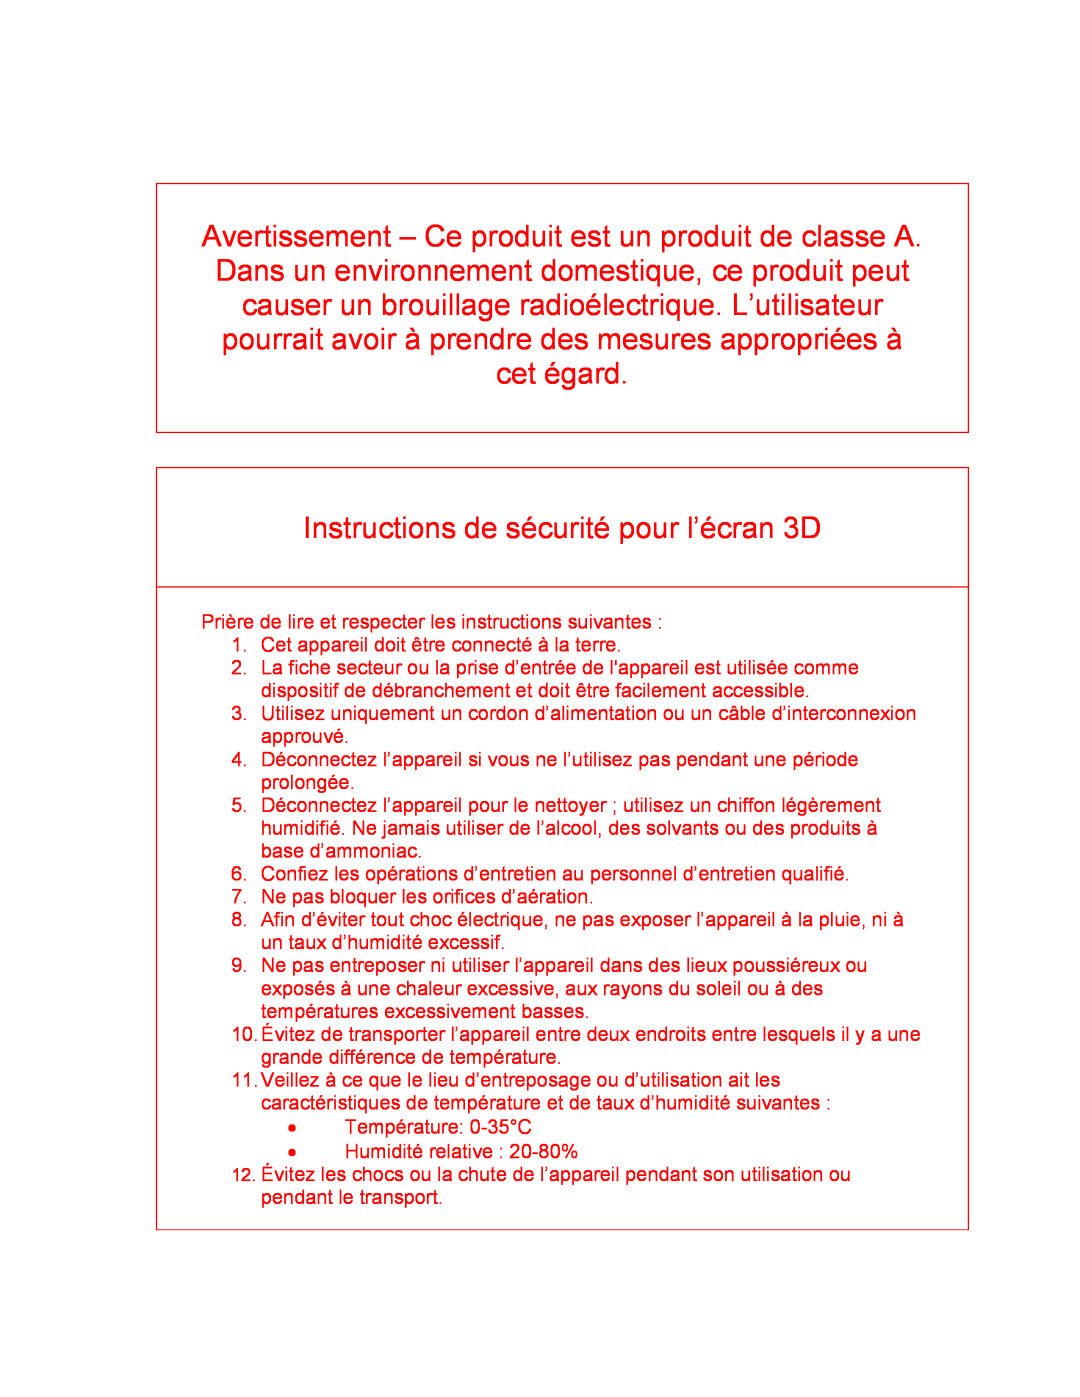 Philips 42-3D6W02/00, 42-3D6C02/00, 42-3D6W01/00, 42-3D6C01/00 user manual Instructions de sécurité pour l’écran 3D 